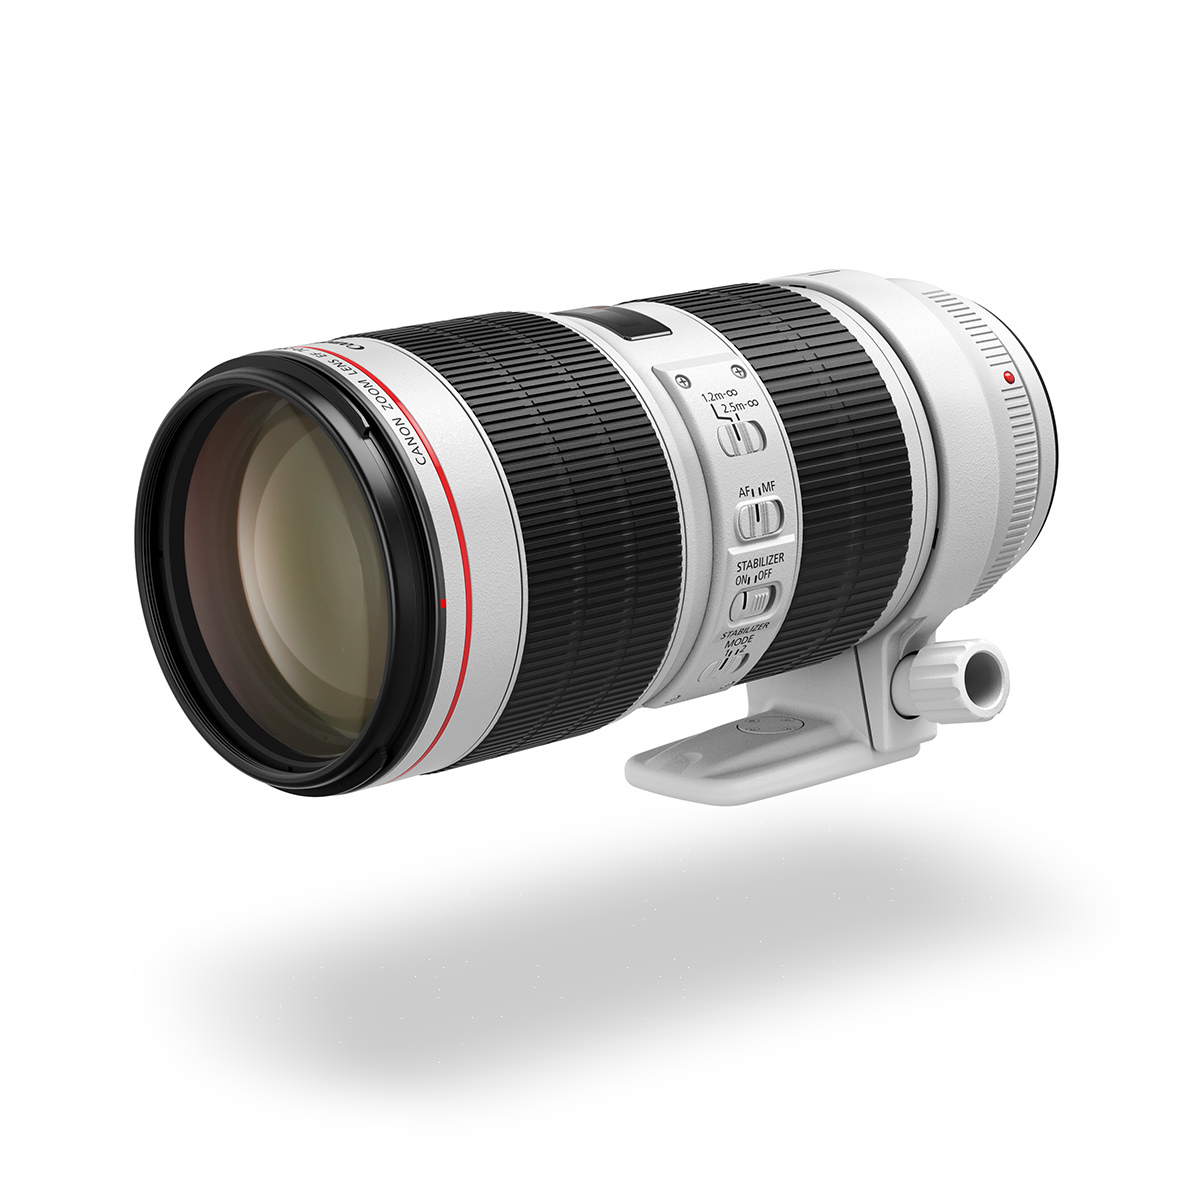 EF 70-200mm f/4L IS USM lens